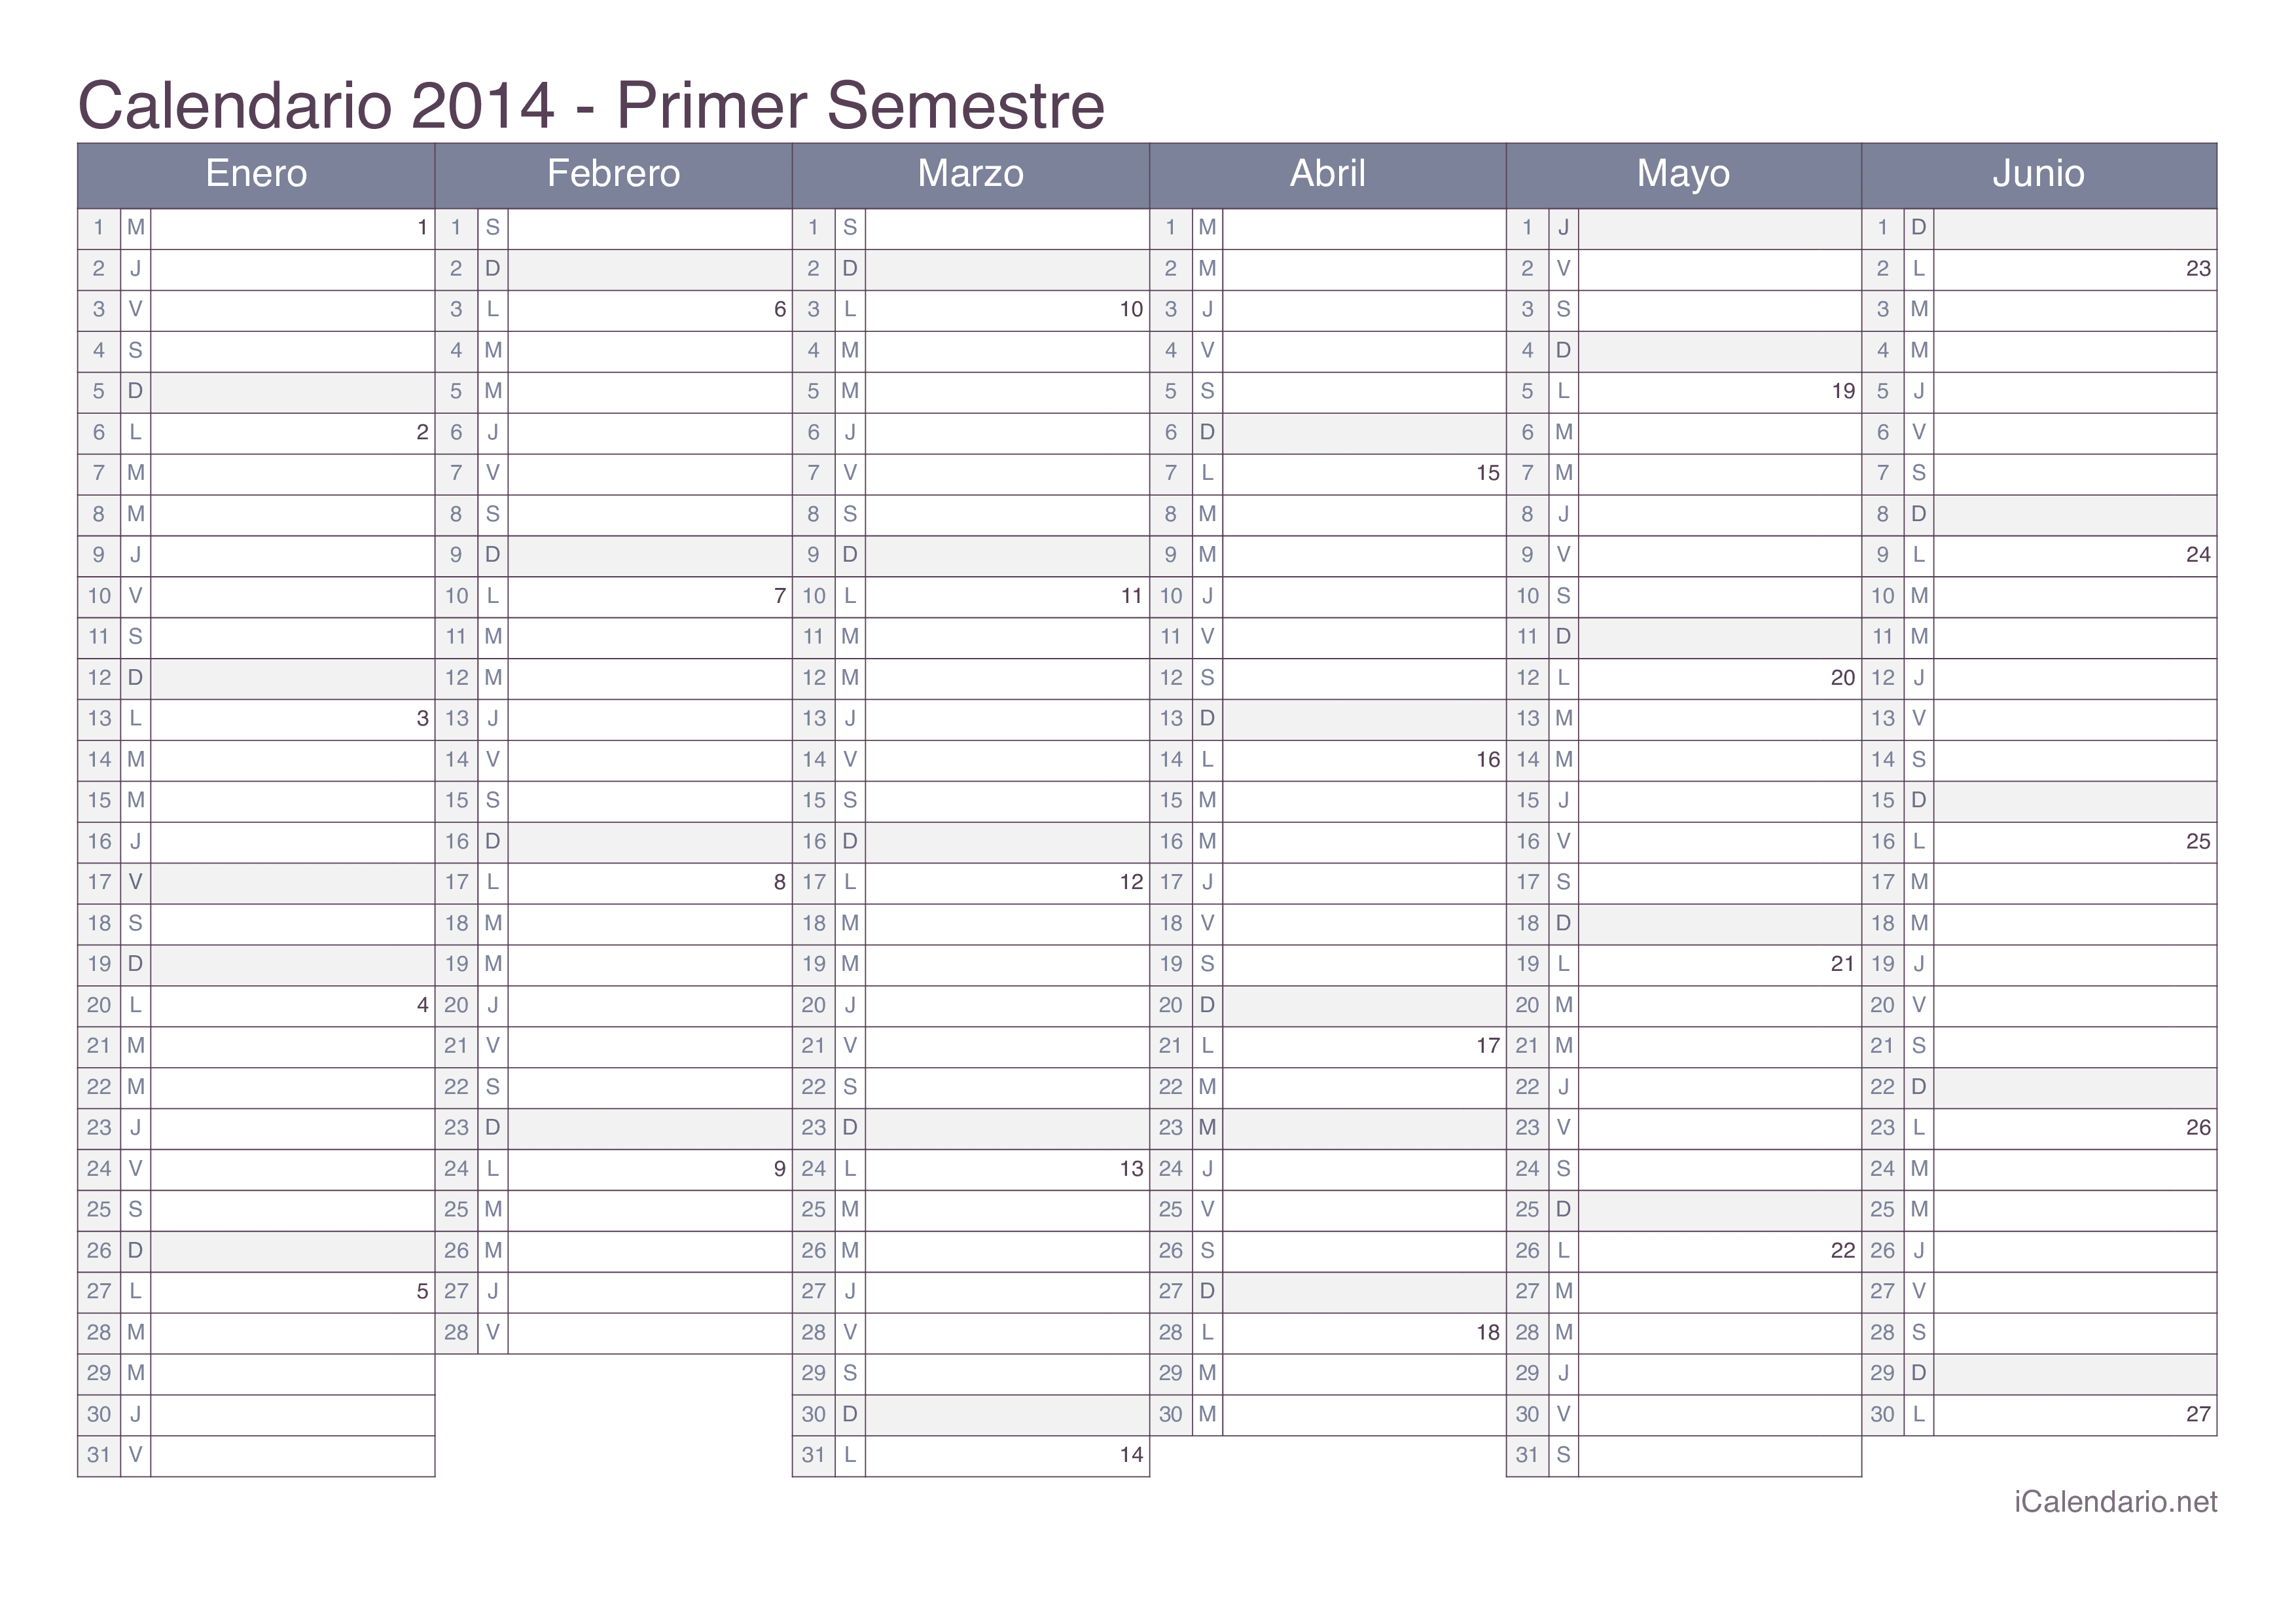 Calendario por semestre com números da semana 2014 - Office